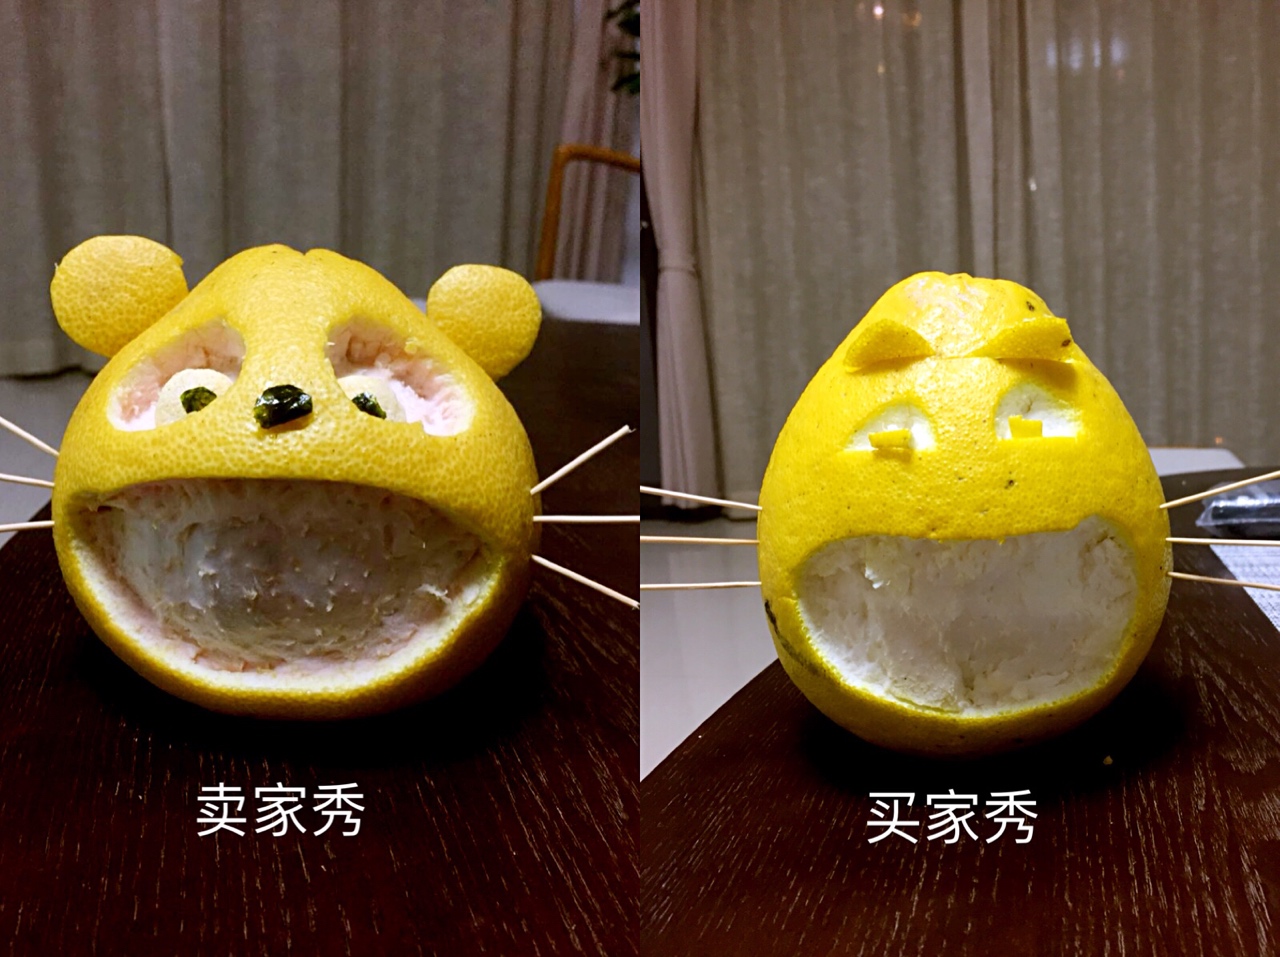 3．重庆柚子苗：如何评价重庆柚子猫工作室开发的游戏《戴森球计划》？ 